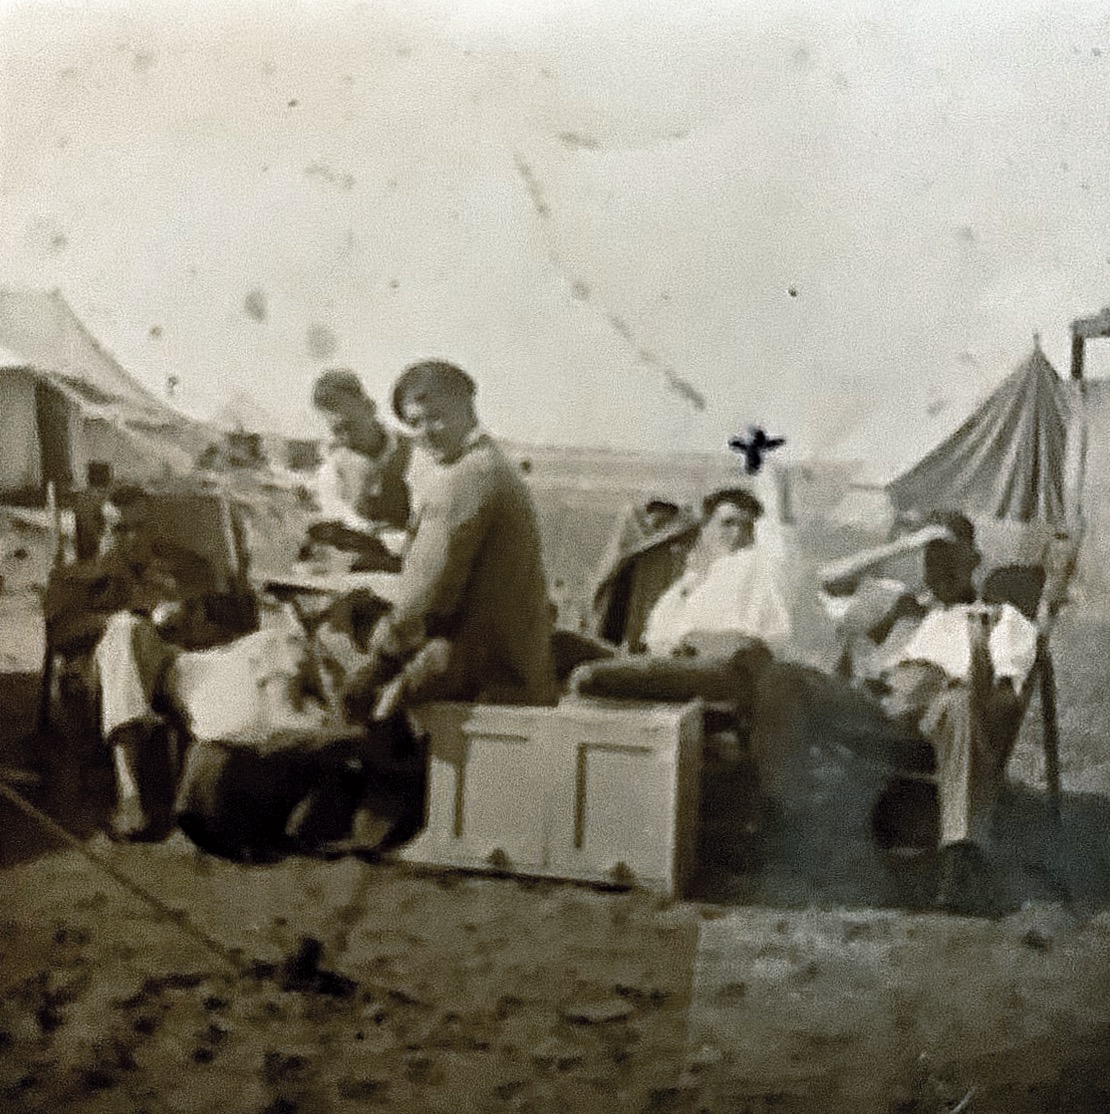 Field Hospital in Palestine 1941